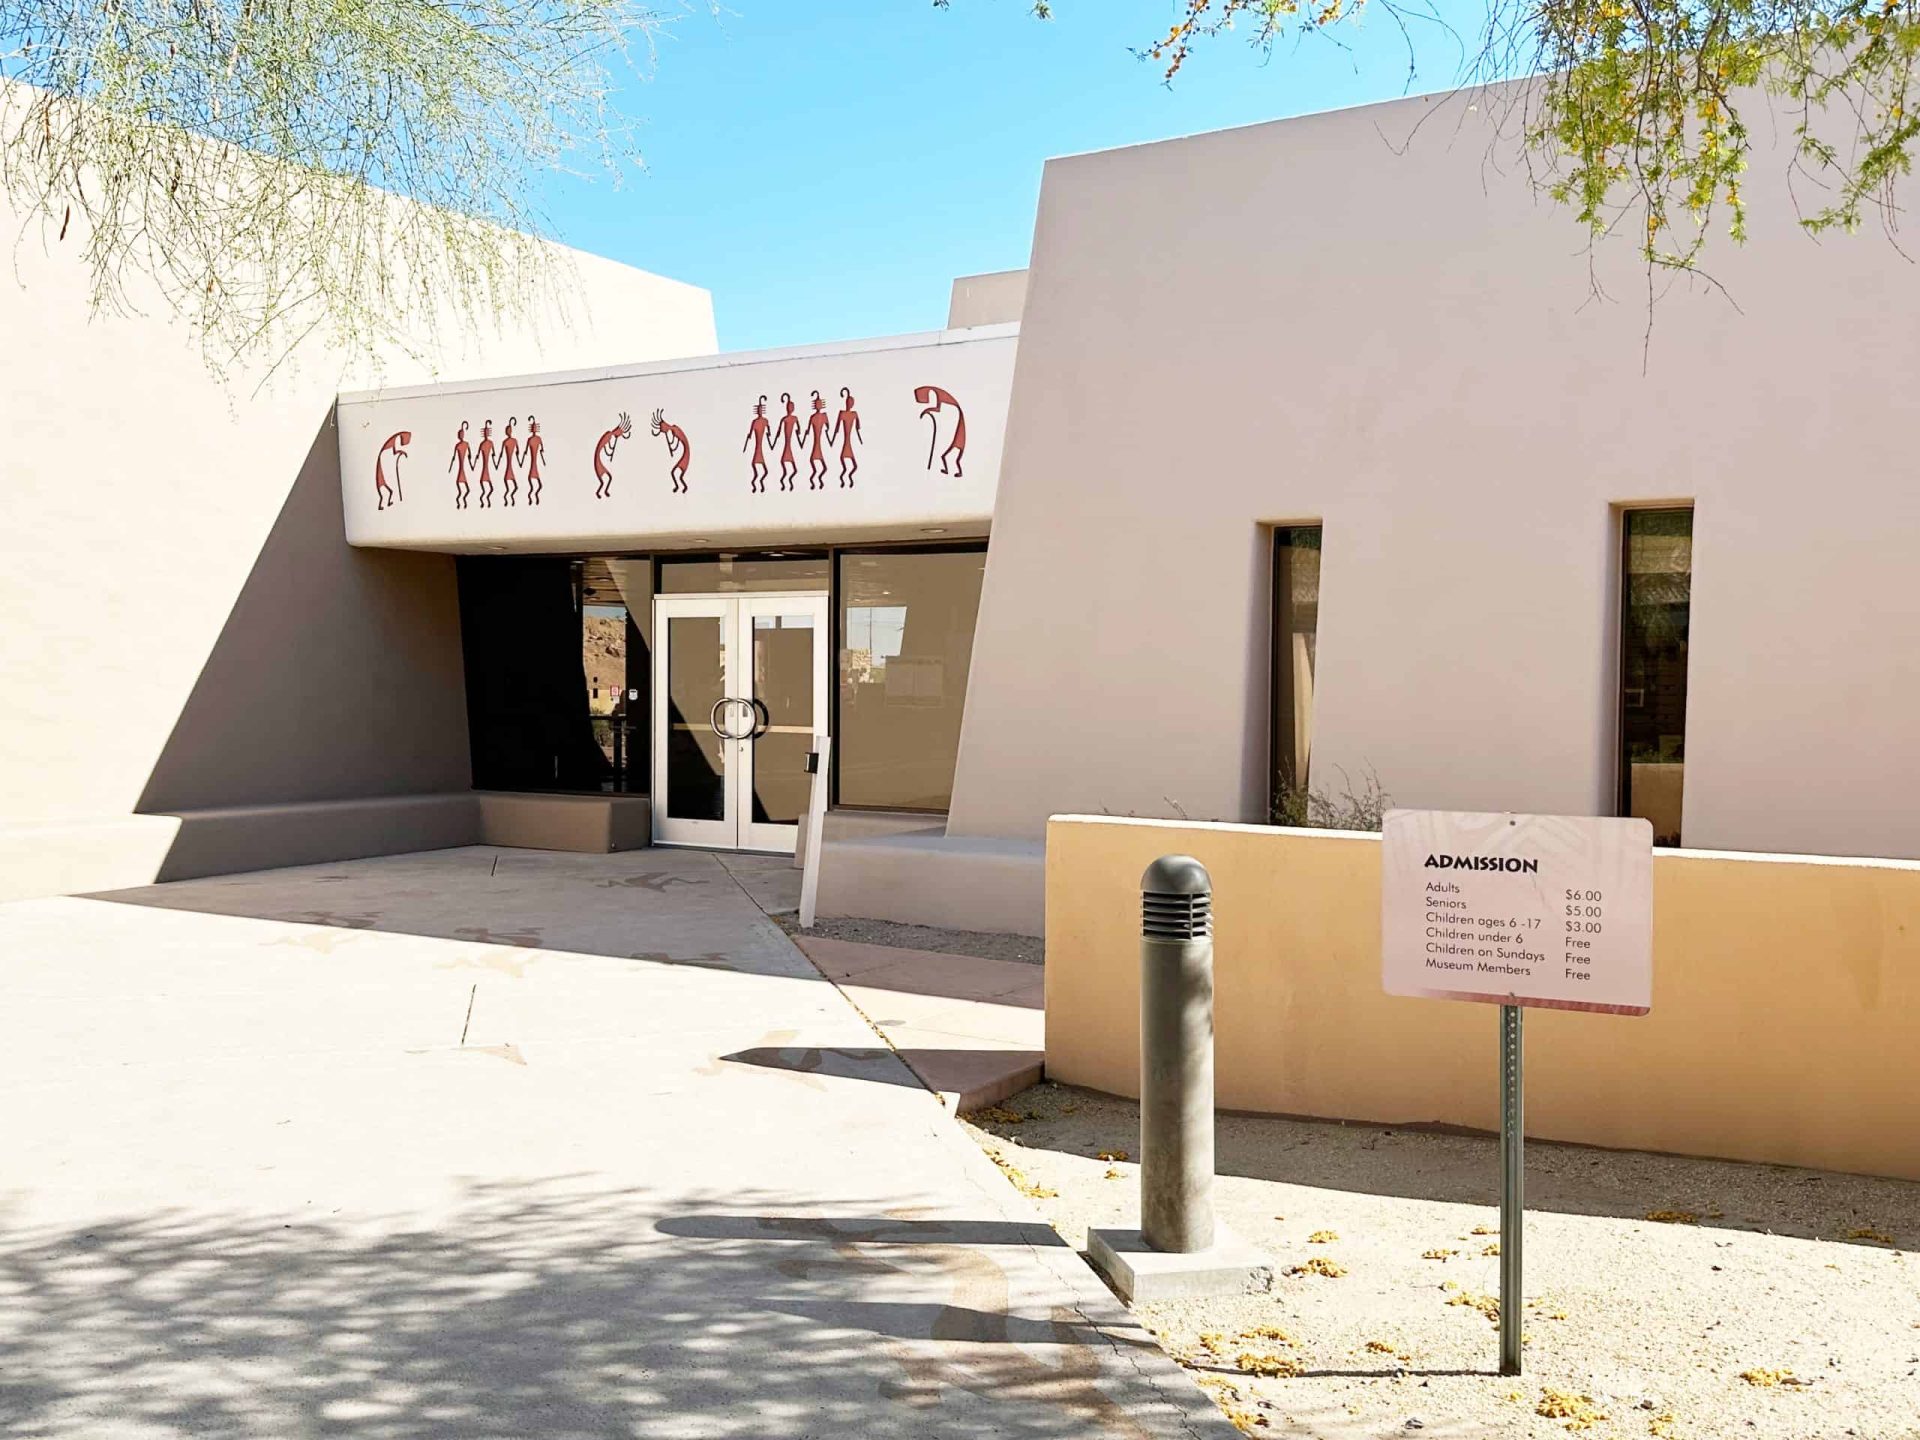 Pueblo Grande Museum Renamed S’edav Va’aki Museum